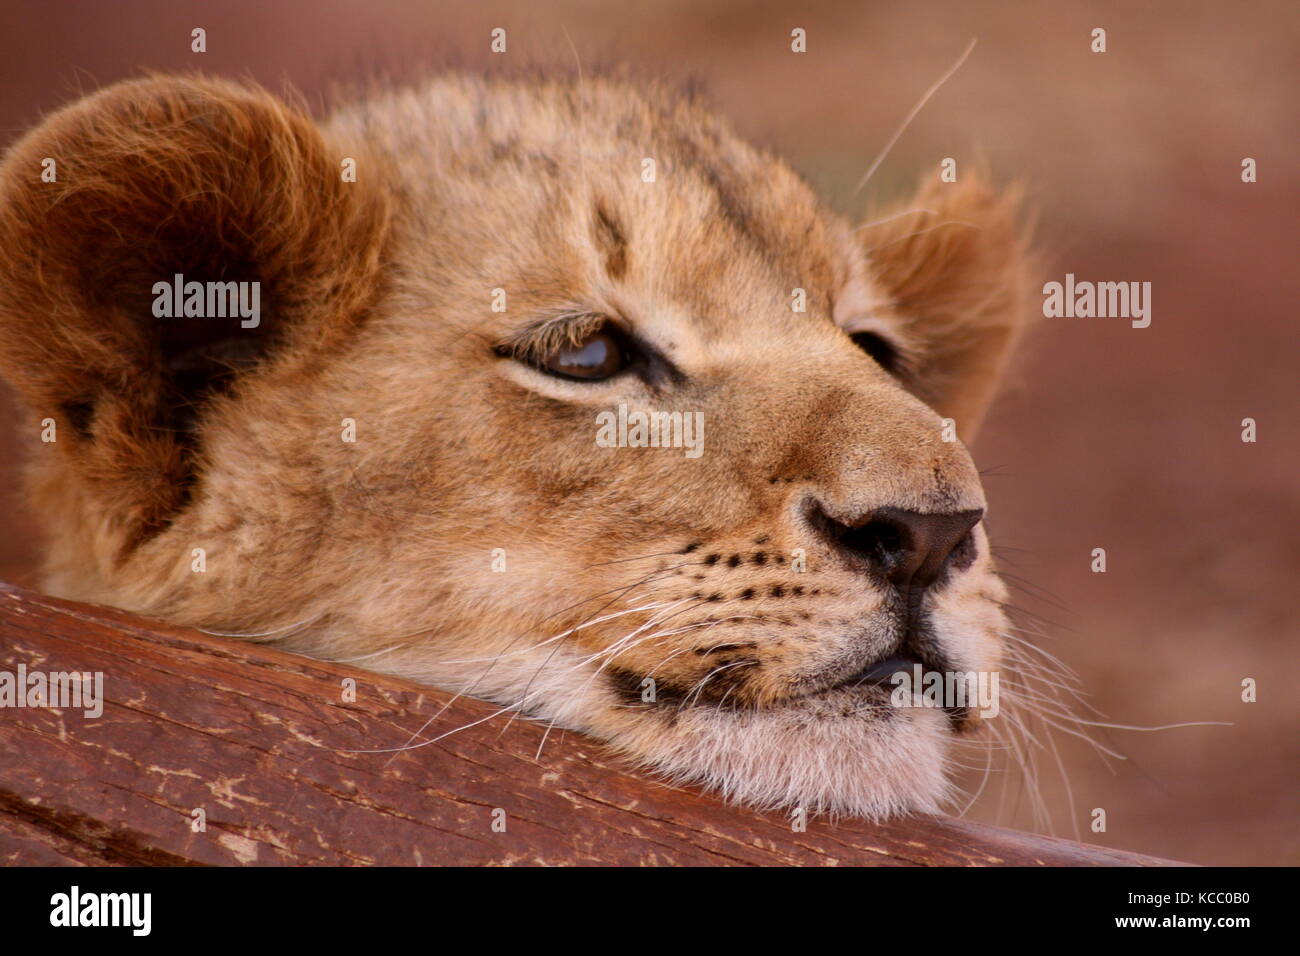 Lion cub in appoggio la sua testa su un log in provincia di Gauteng, sud africa Foto Stock